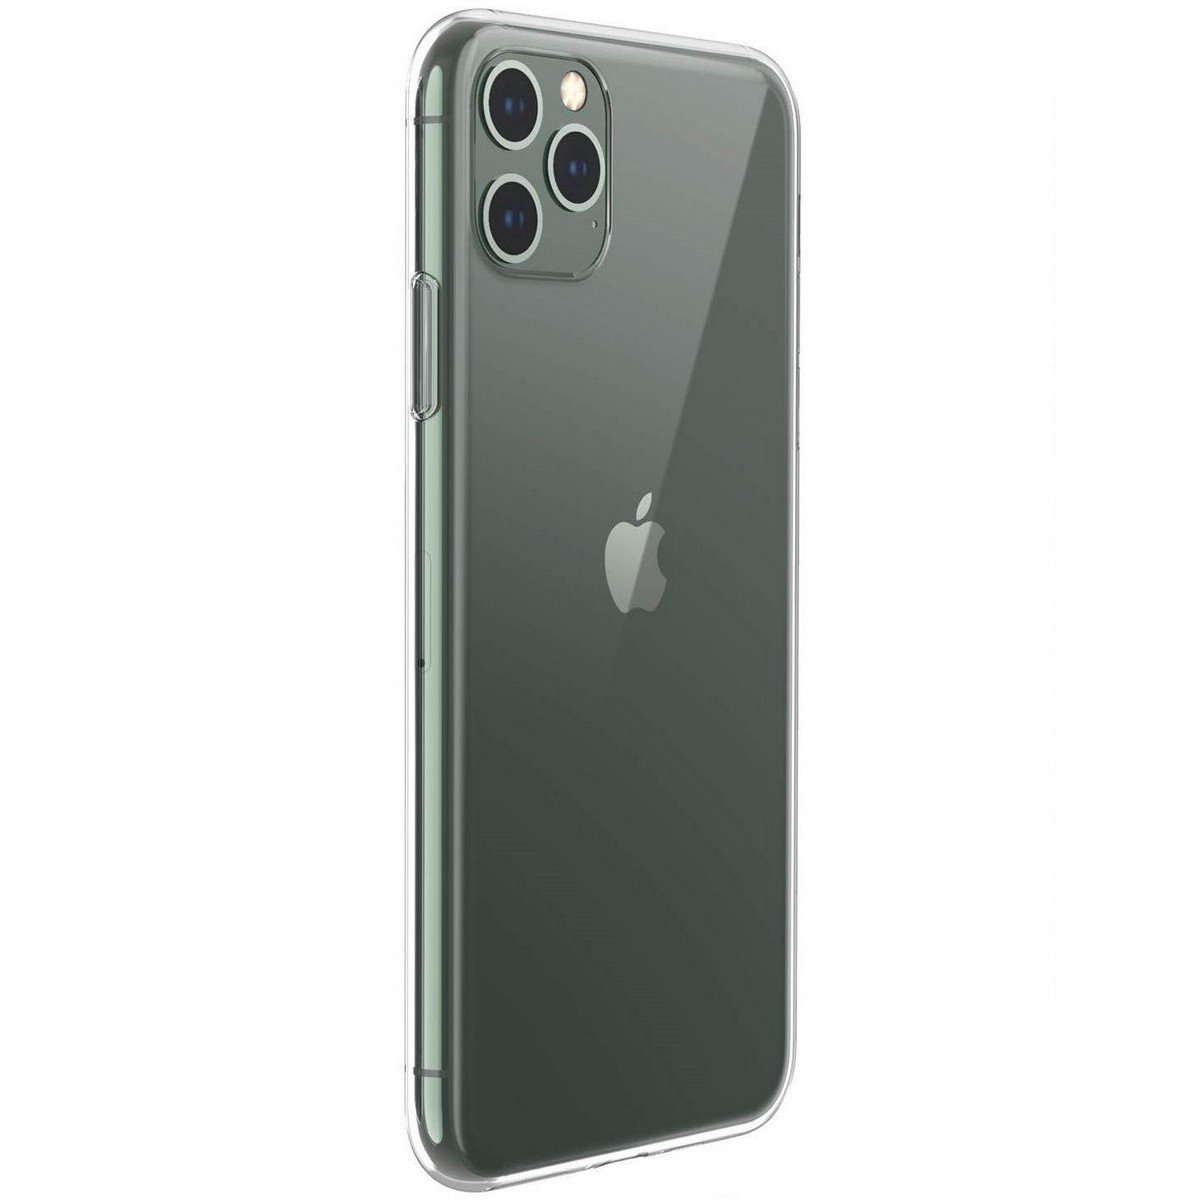 Apple iPhone 11 Pro Max Şeffaf Silikon Kılıf | Quse